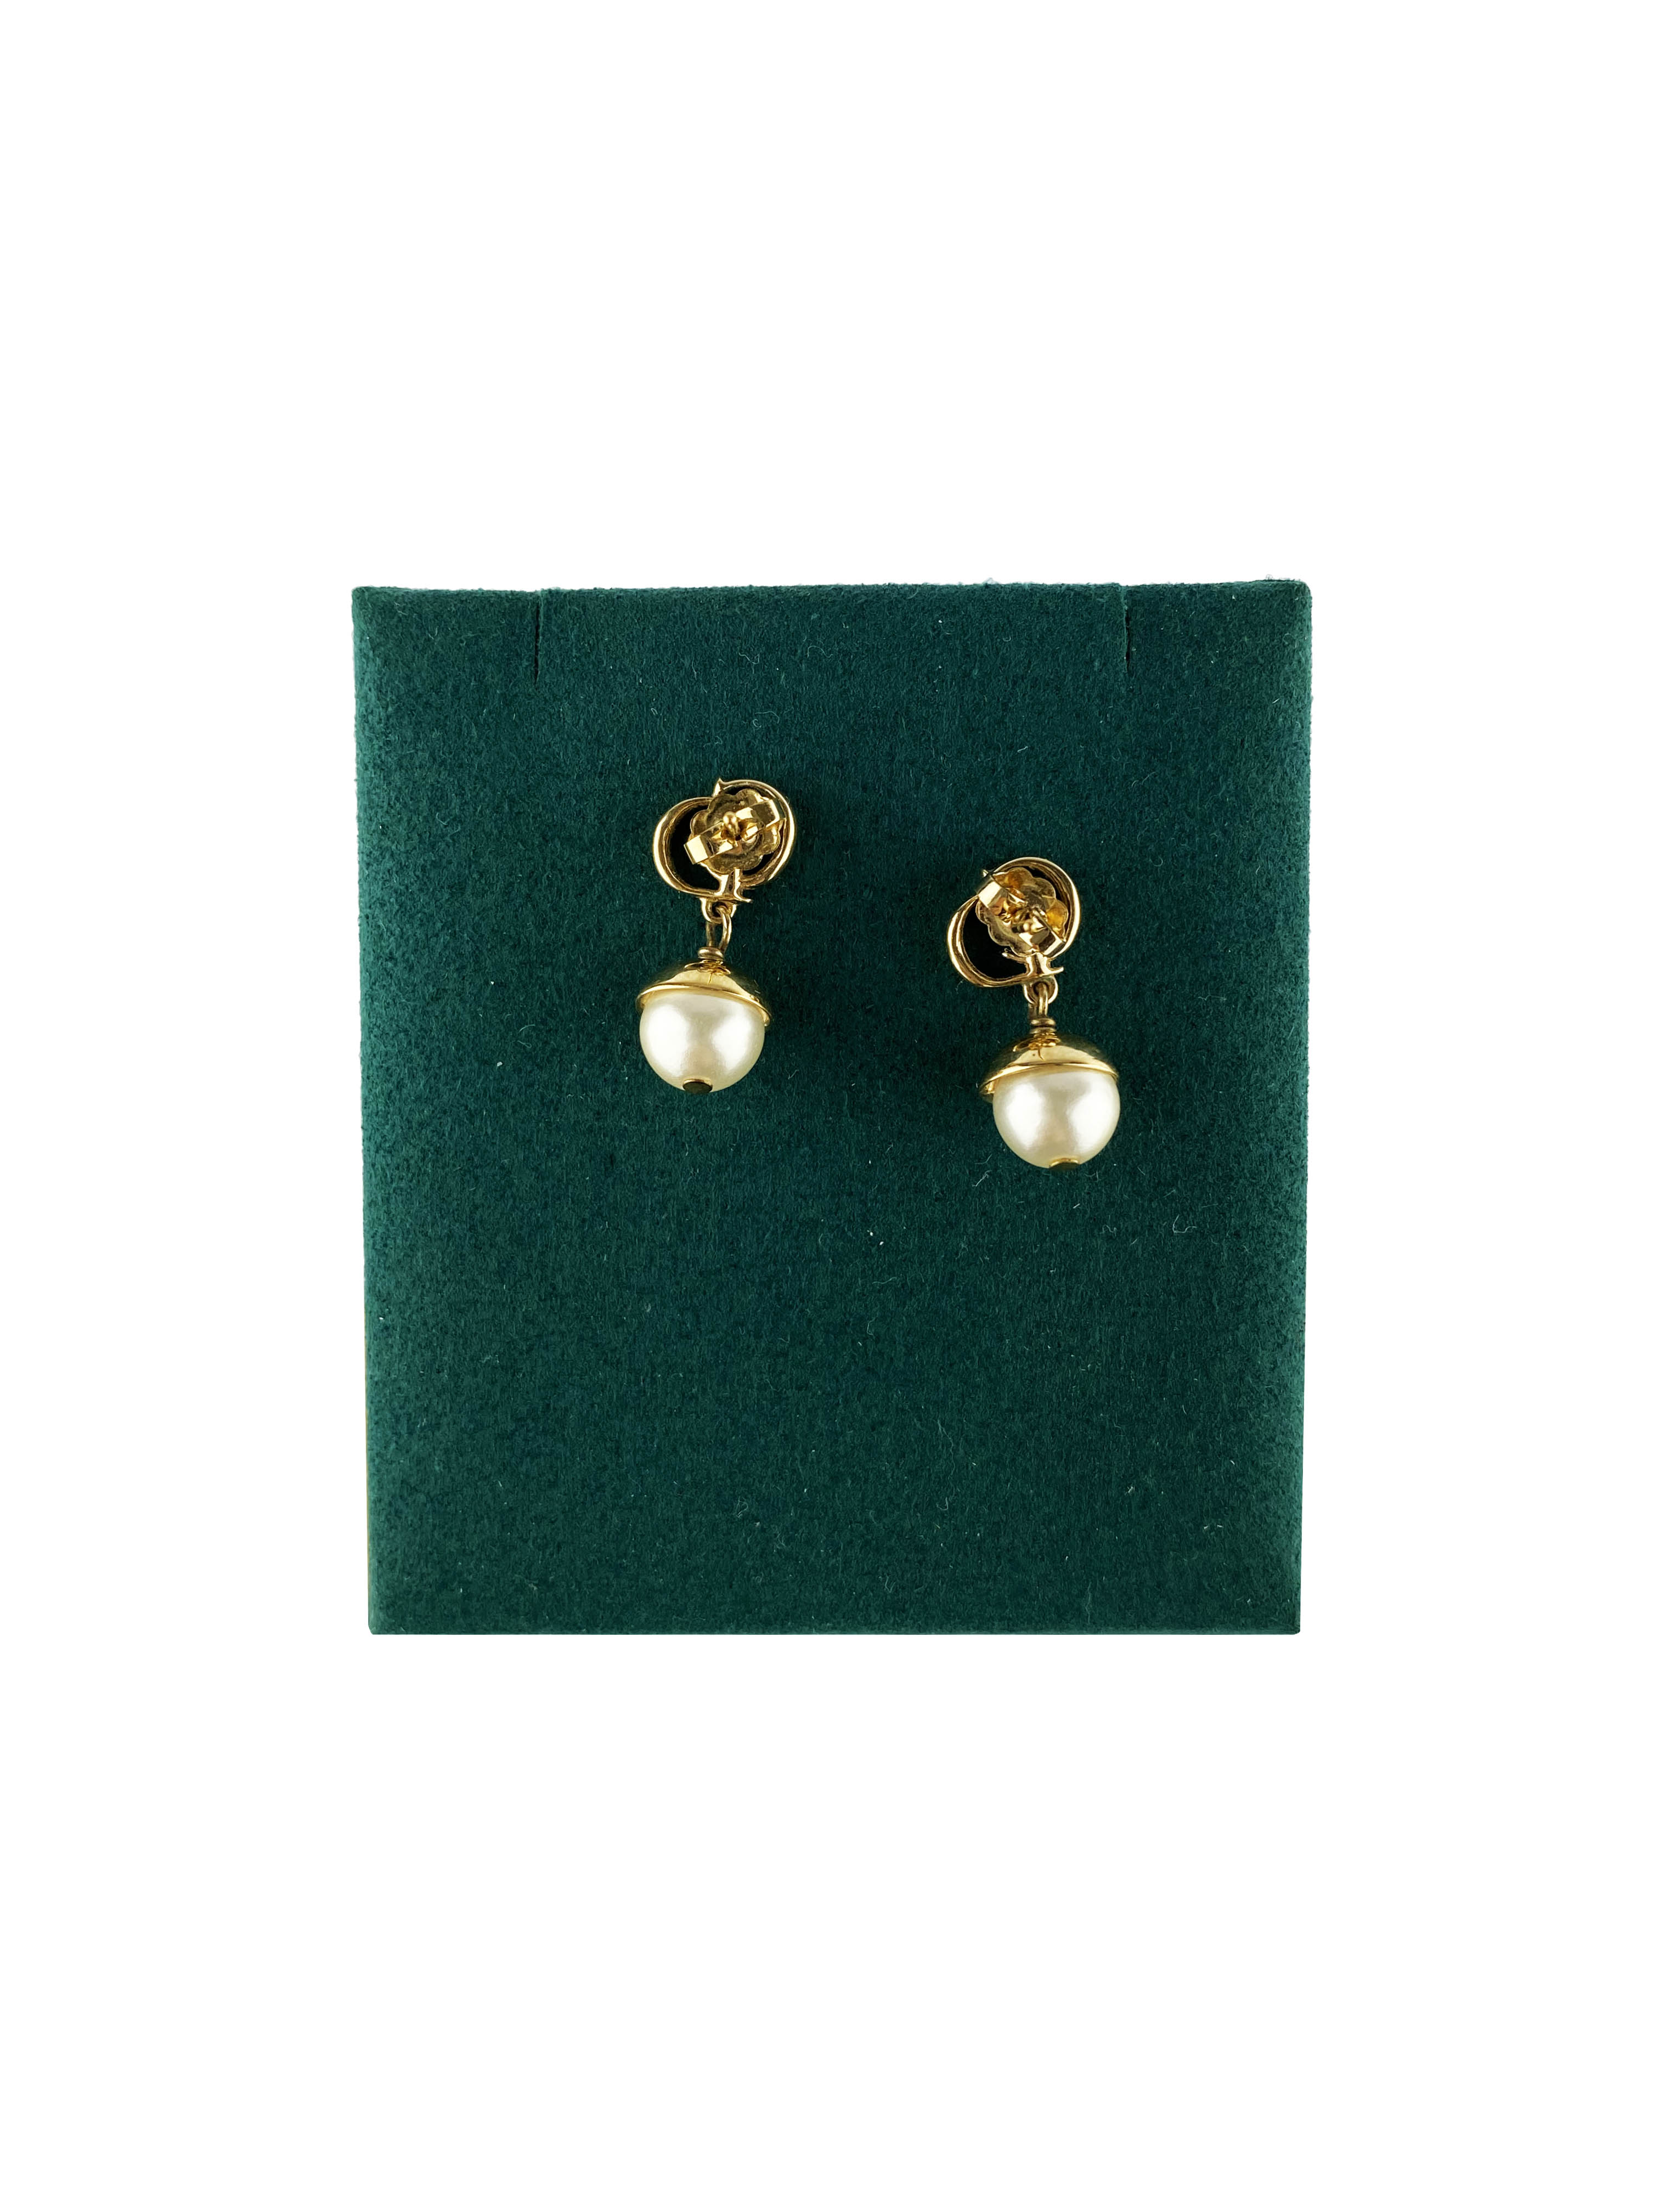 dior-pearl-earrings-2.jpg